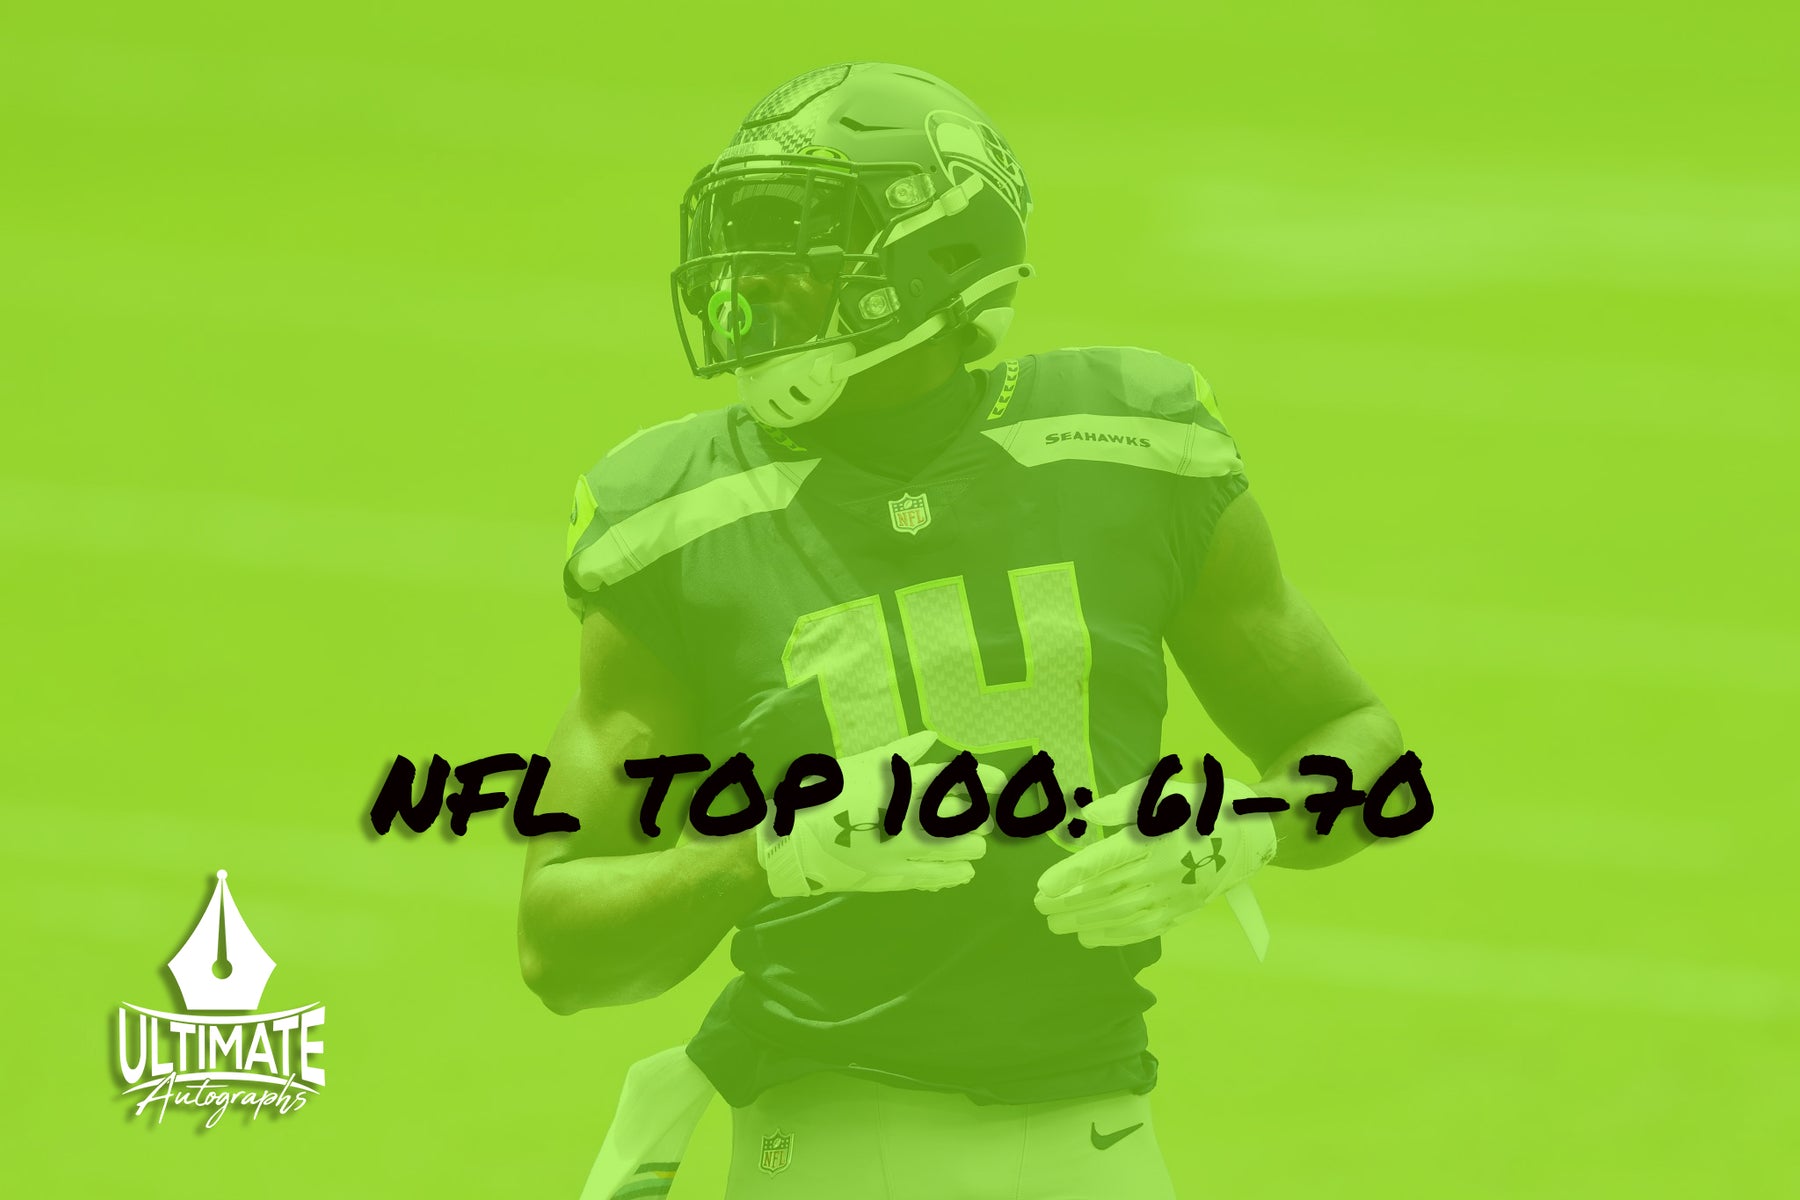 NFL Top 100: 61-70